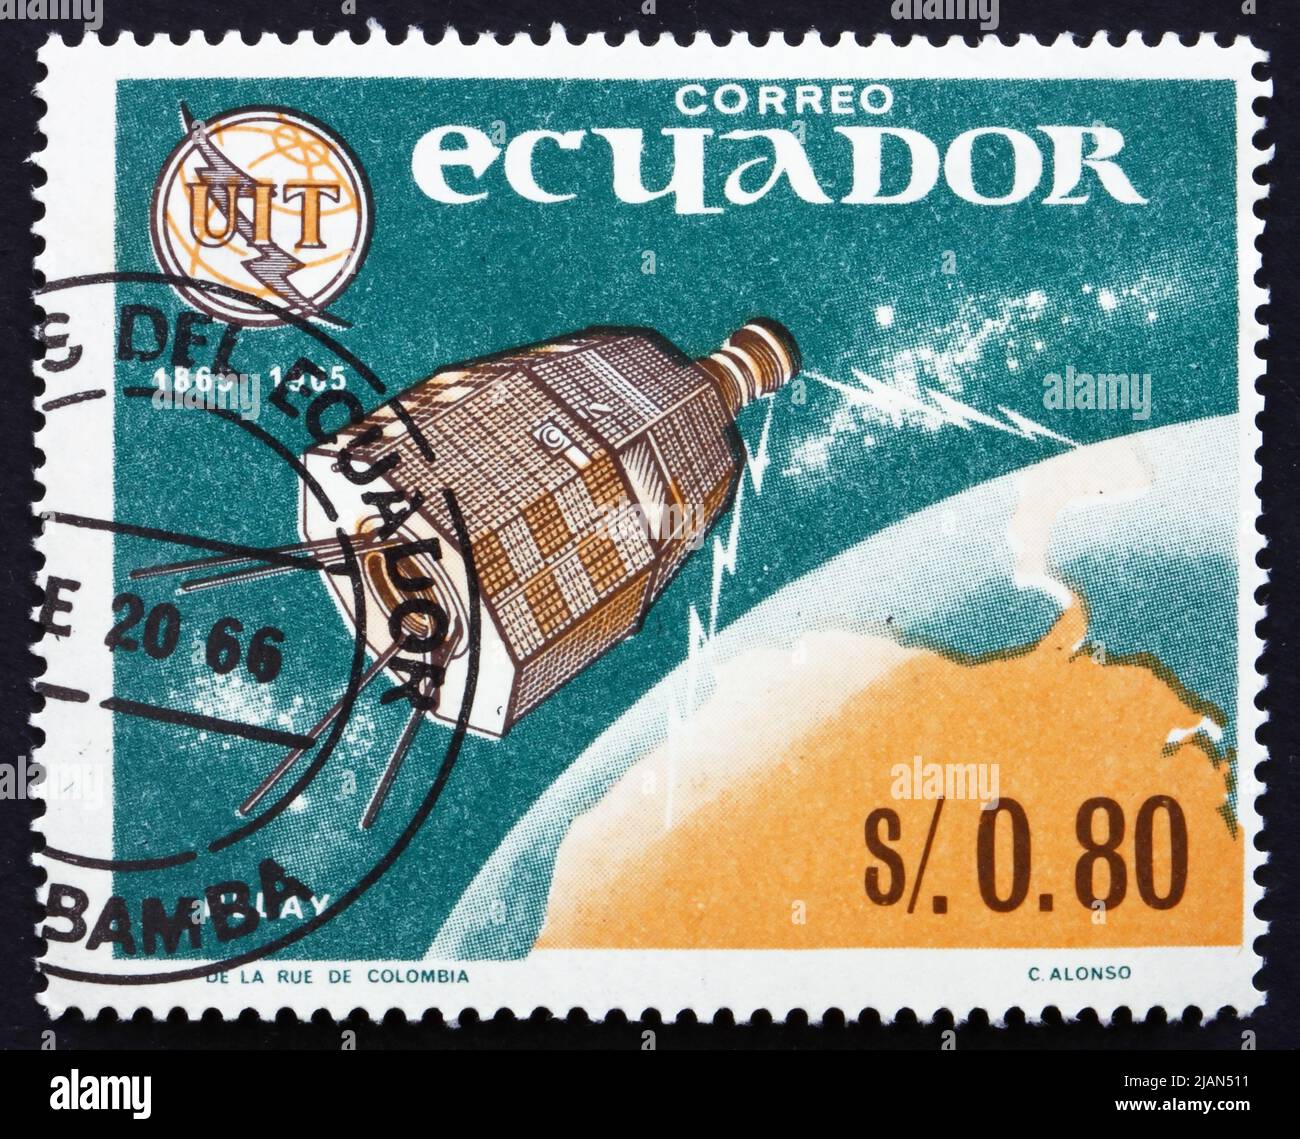 ÉQUATEUR - VERS 1966 : un timbre imprimé en Équateur montre Relay 1, 1st émissions de télévision dans l'océan Pacifique, vers 1966 Banque D'Images